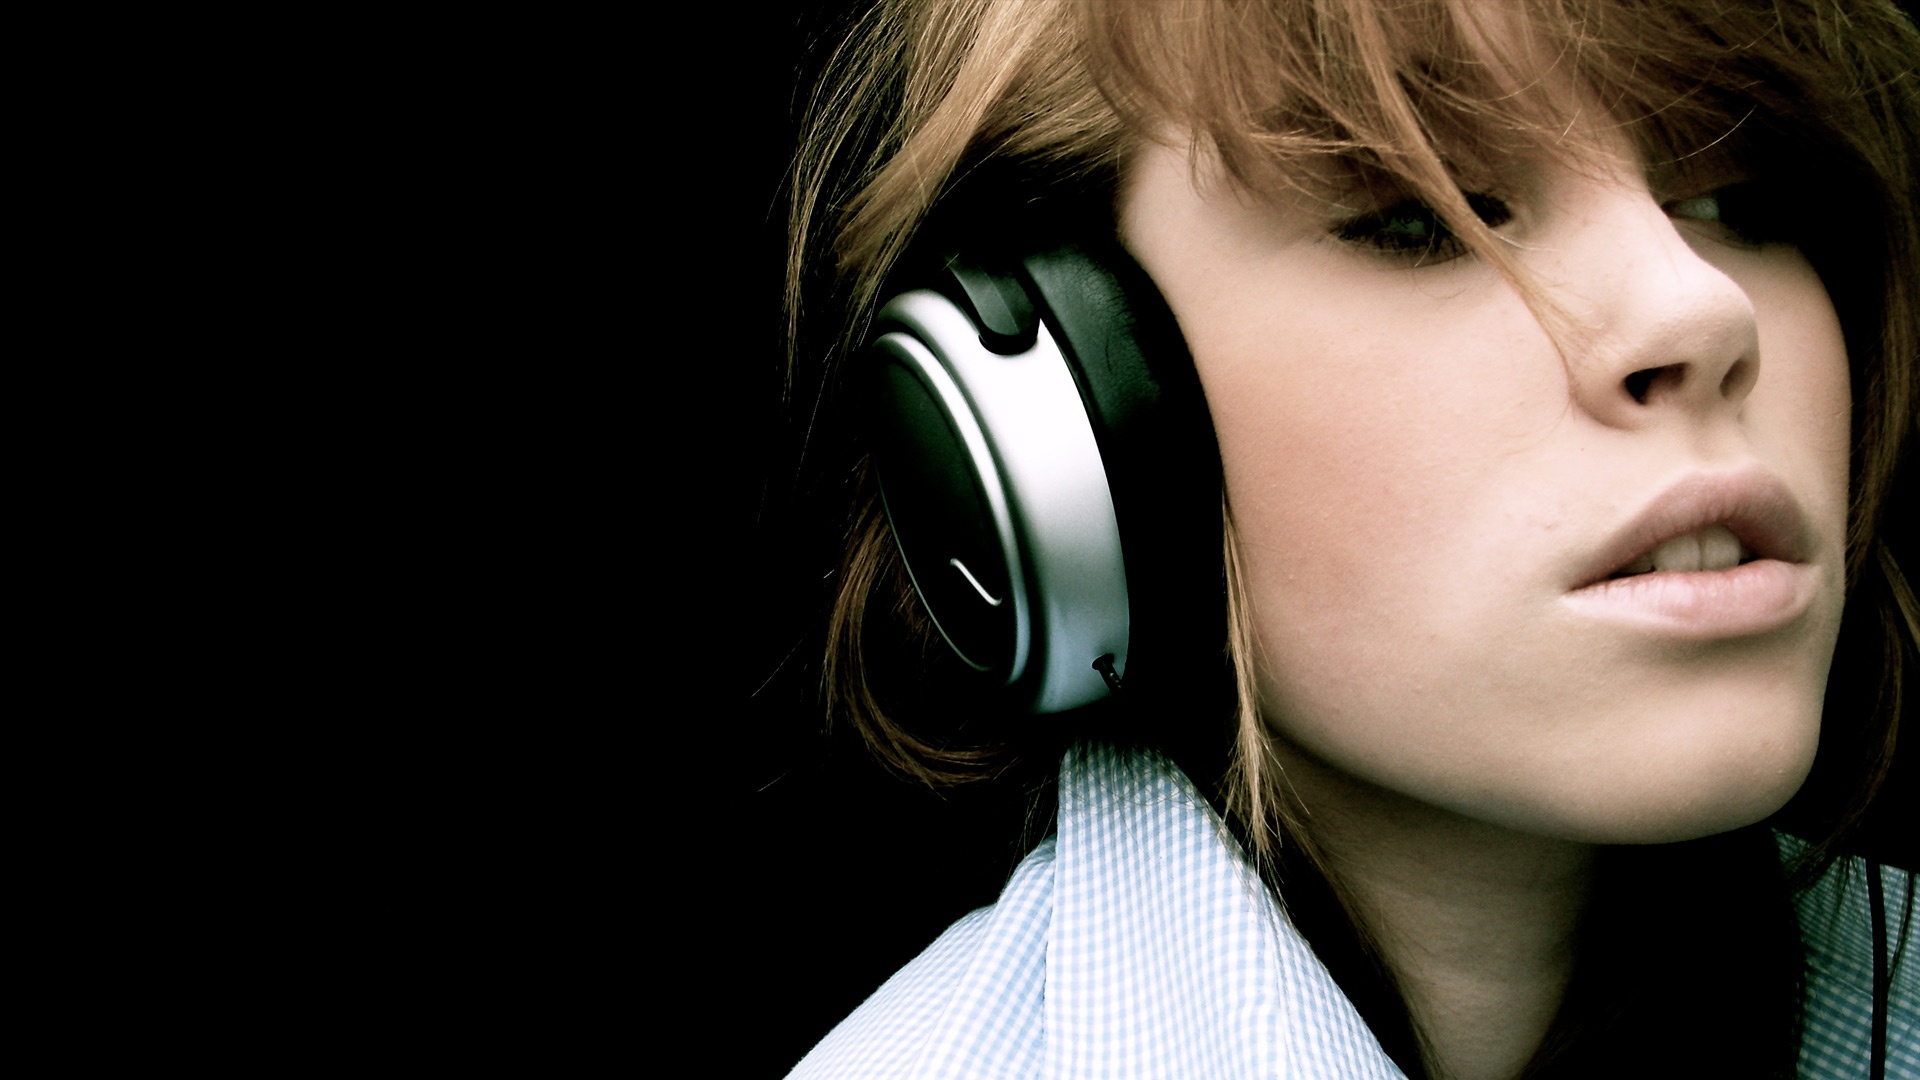 music girl wallpaper,headphones,gadget,ear,audio equipment,cheek